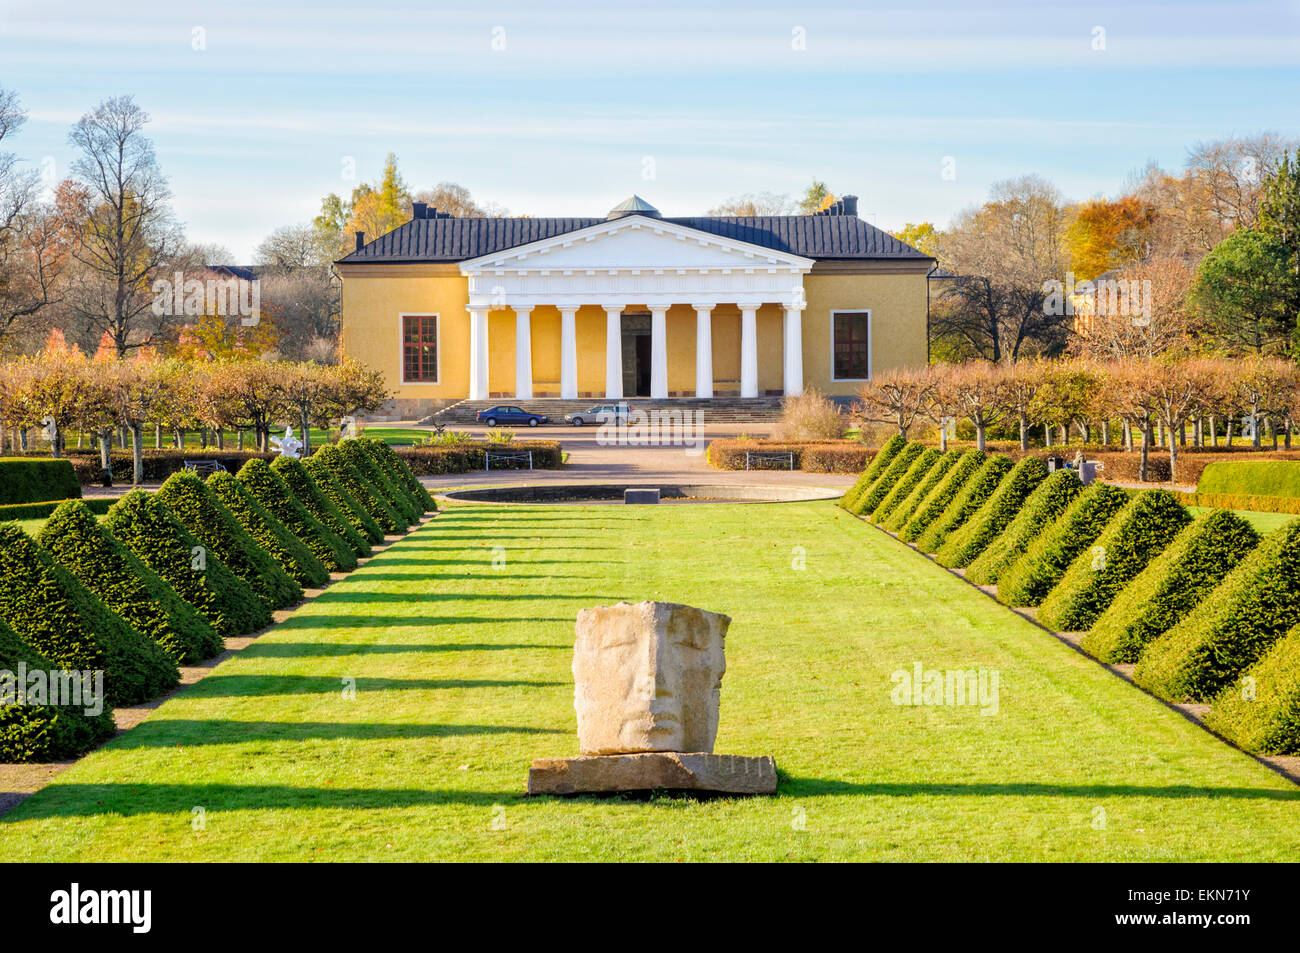 Jardín Botánico de Uppsala, conocido también como el jardín después de Lineo Carolus Linnaeus (aka Carl Linnaeus). Jardines botánicos jardín botánico Lineo Foto de stock